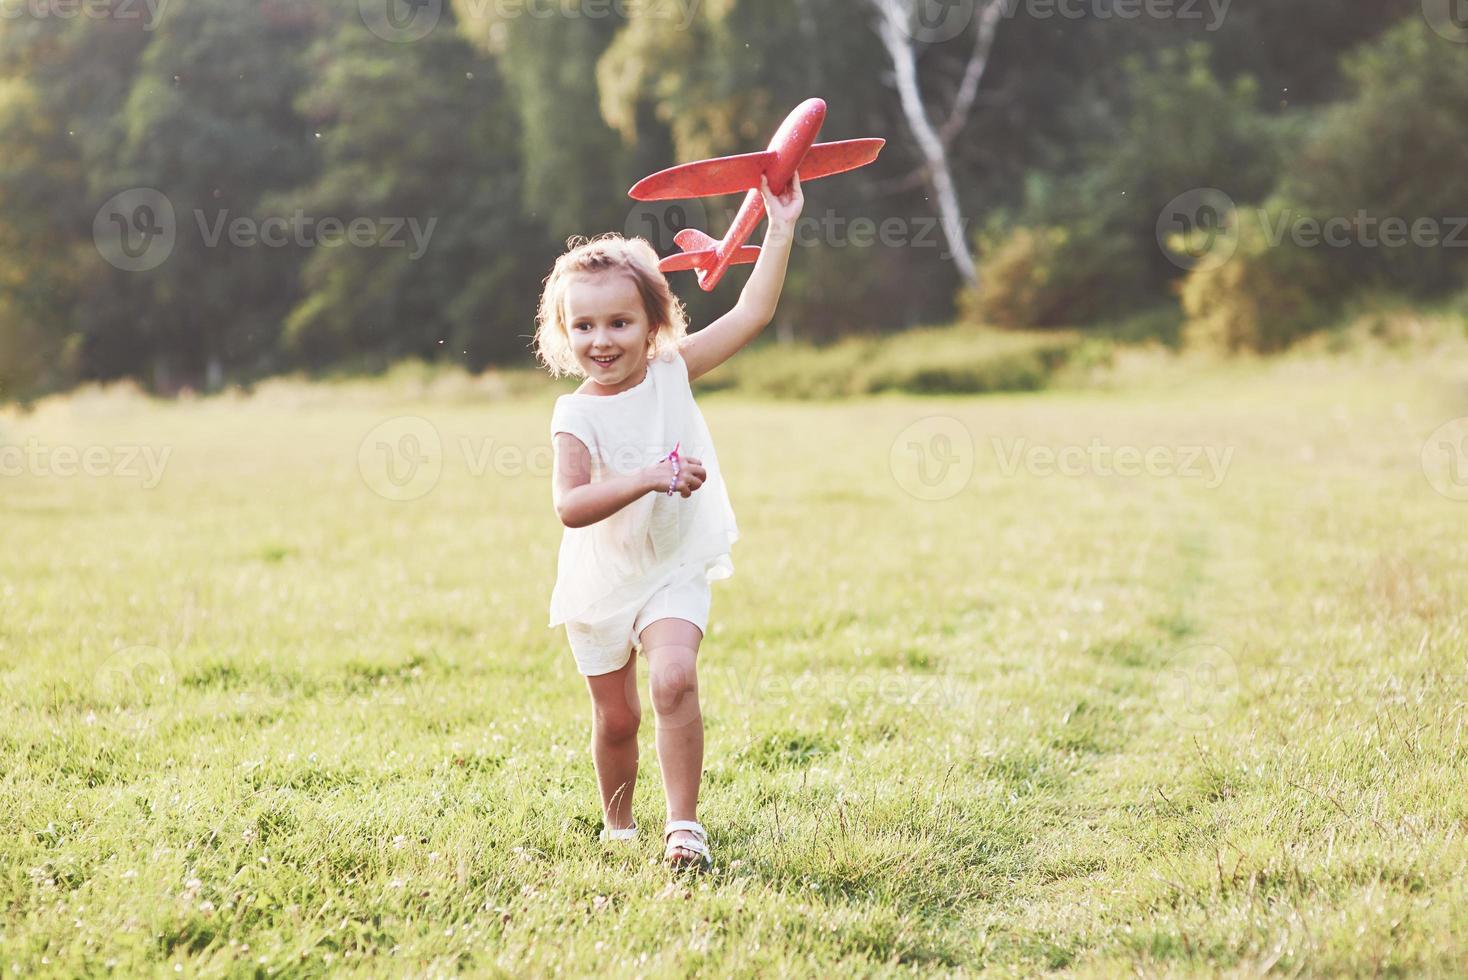 bambina felice che corre sul campo con un aereo giocattolo rosso nelle loro mani. alberi sullo sfondo foto